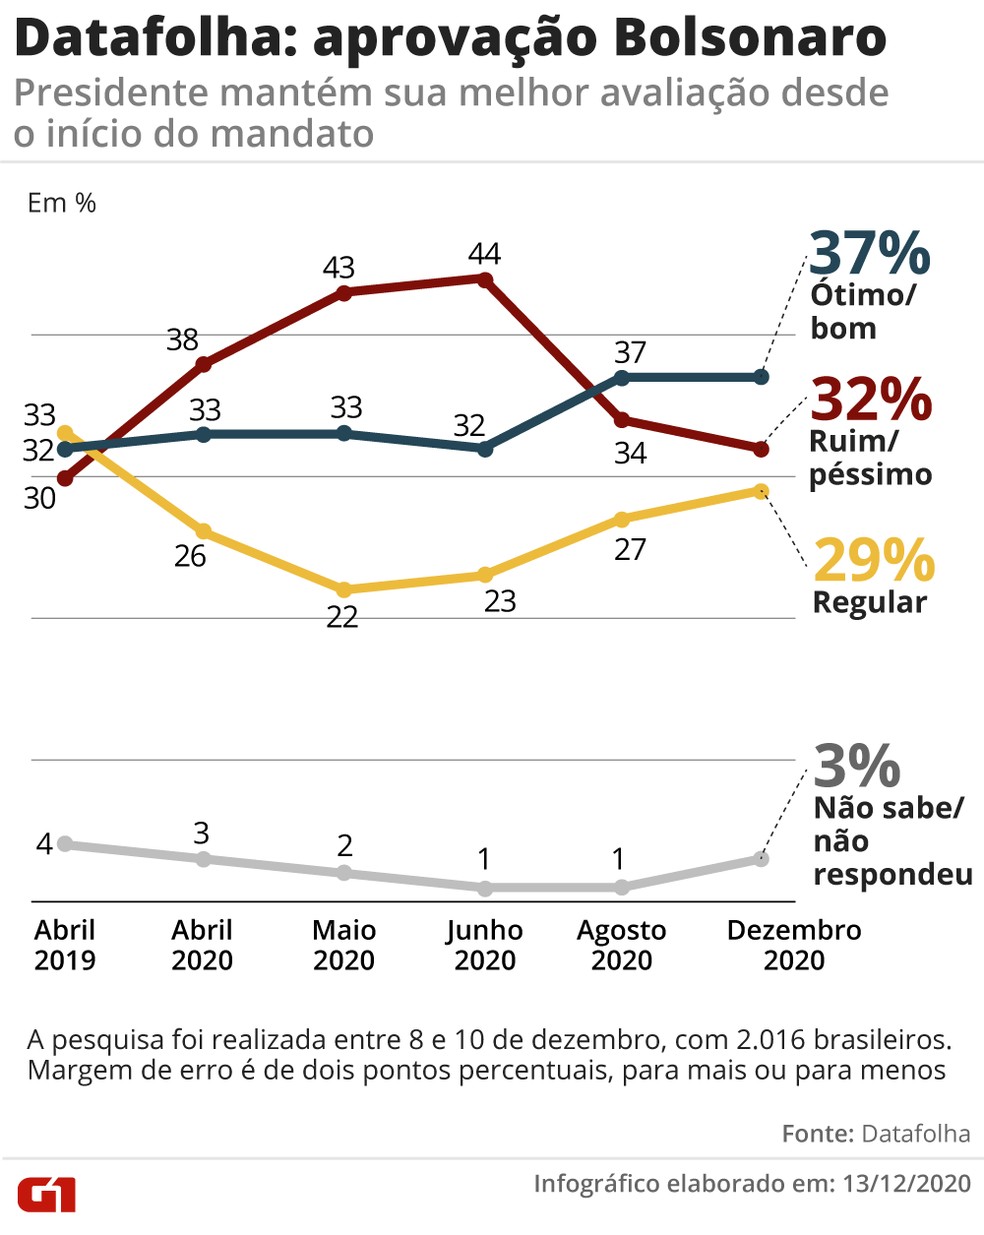 Evolução Datafolha Bolsonaro